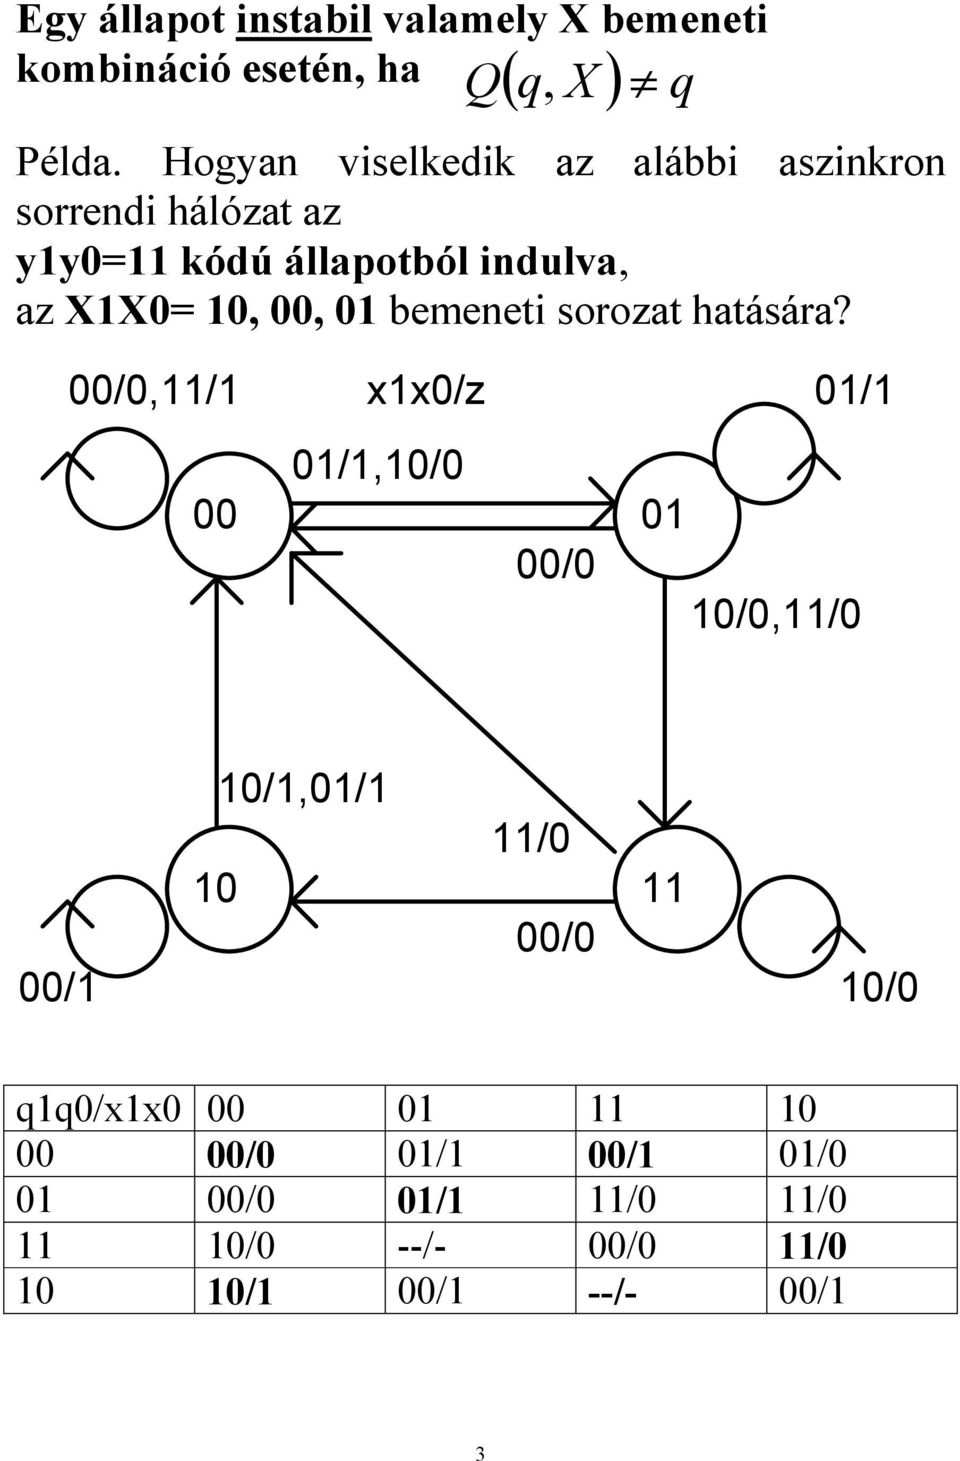 Hogyan viselkedik az alábbi aszinkron sorrendi hálózat az yy= kódú